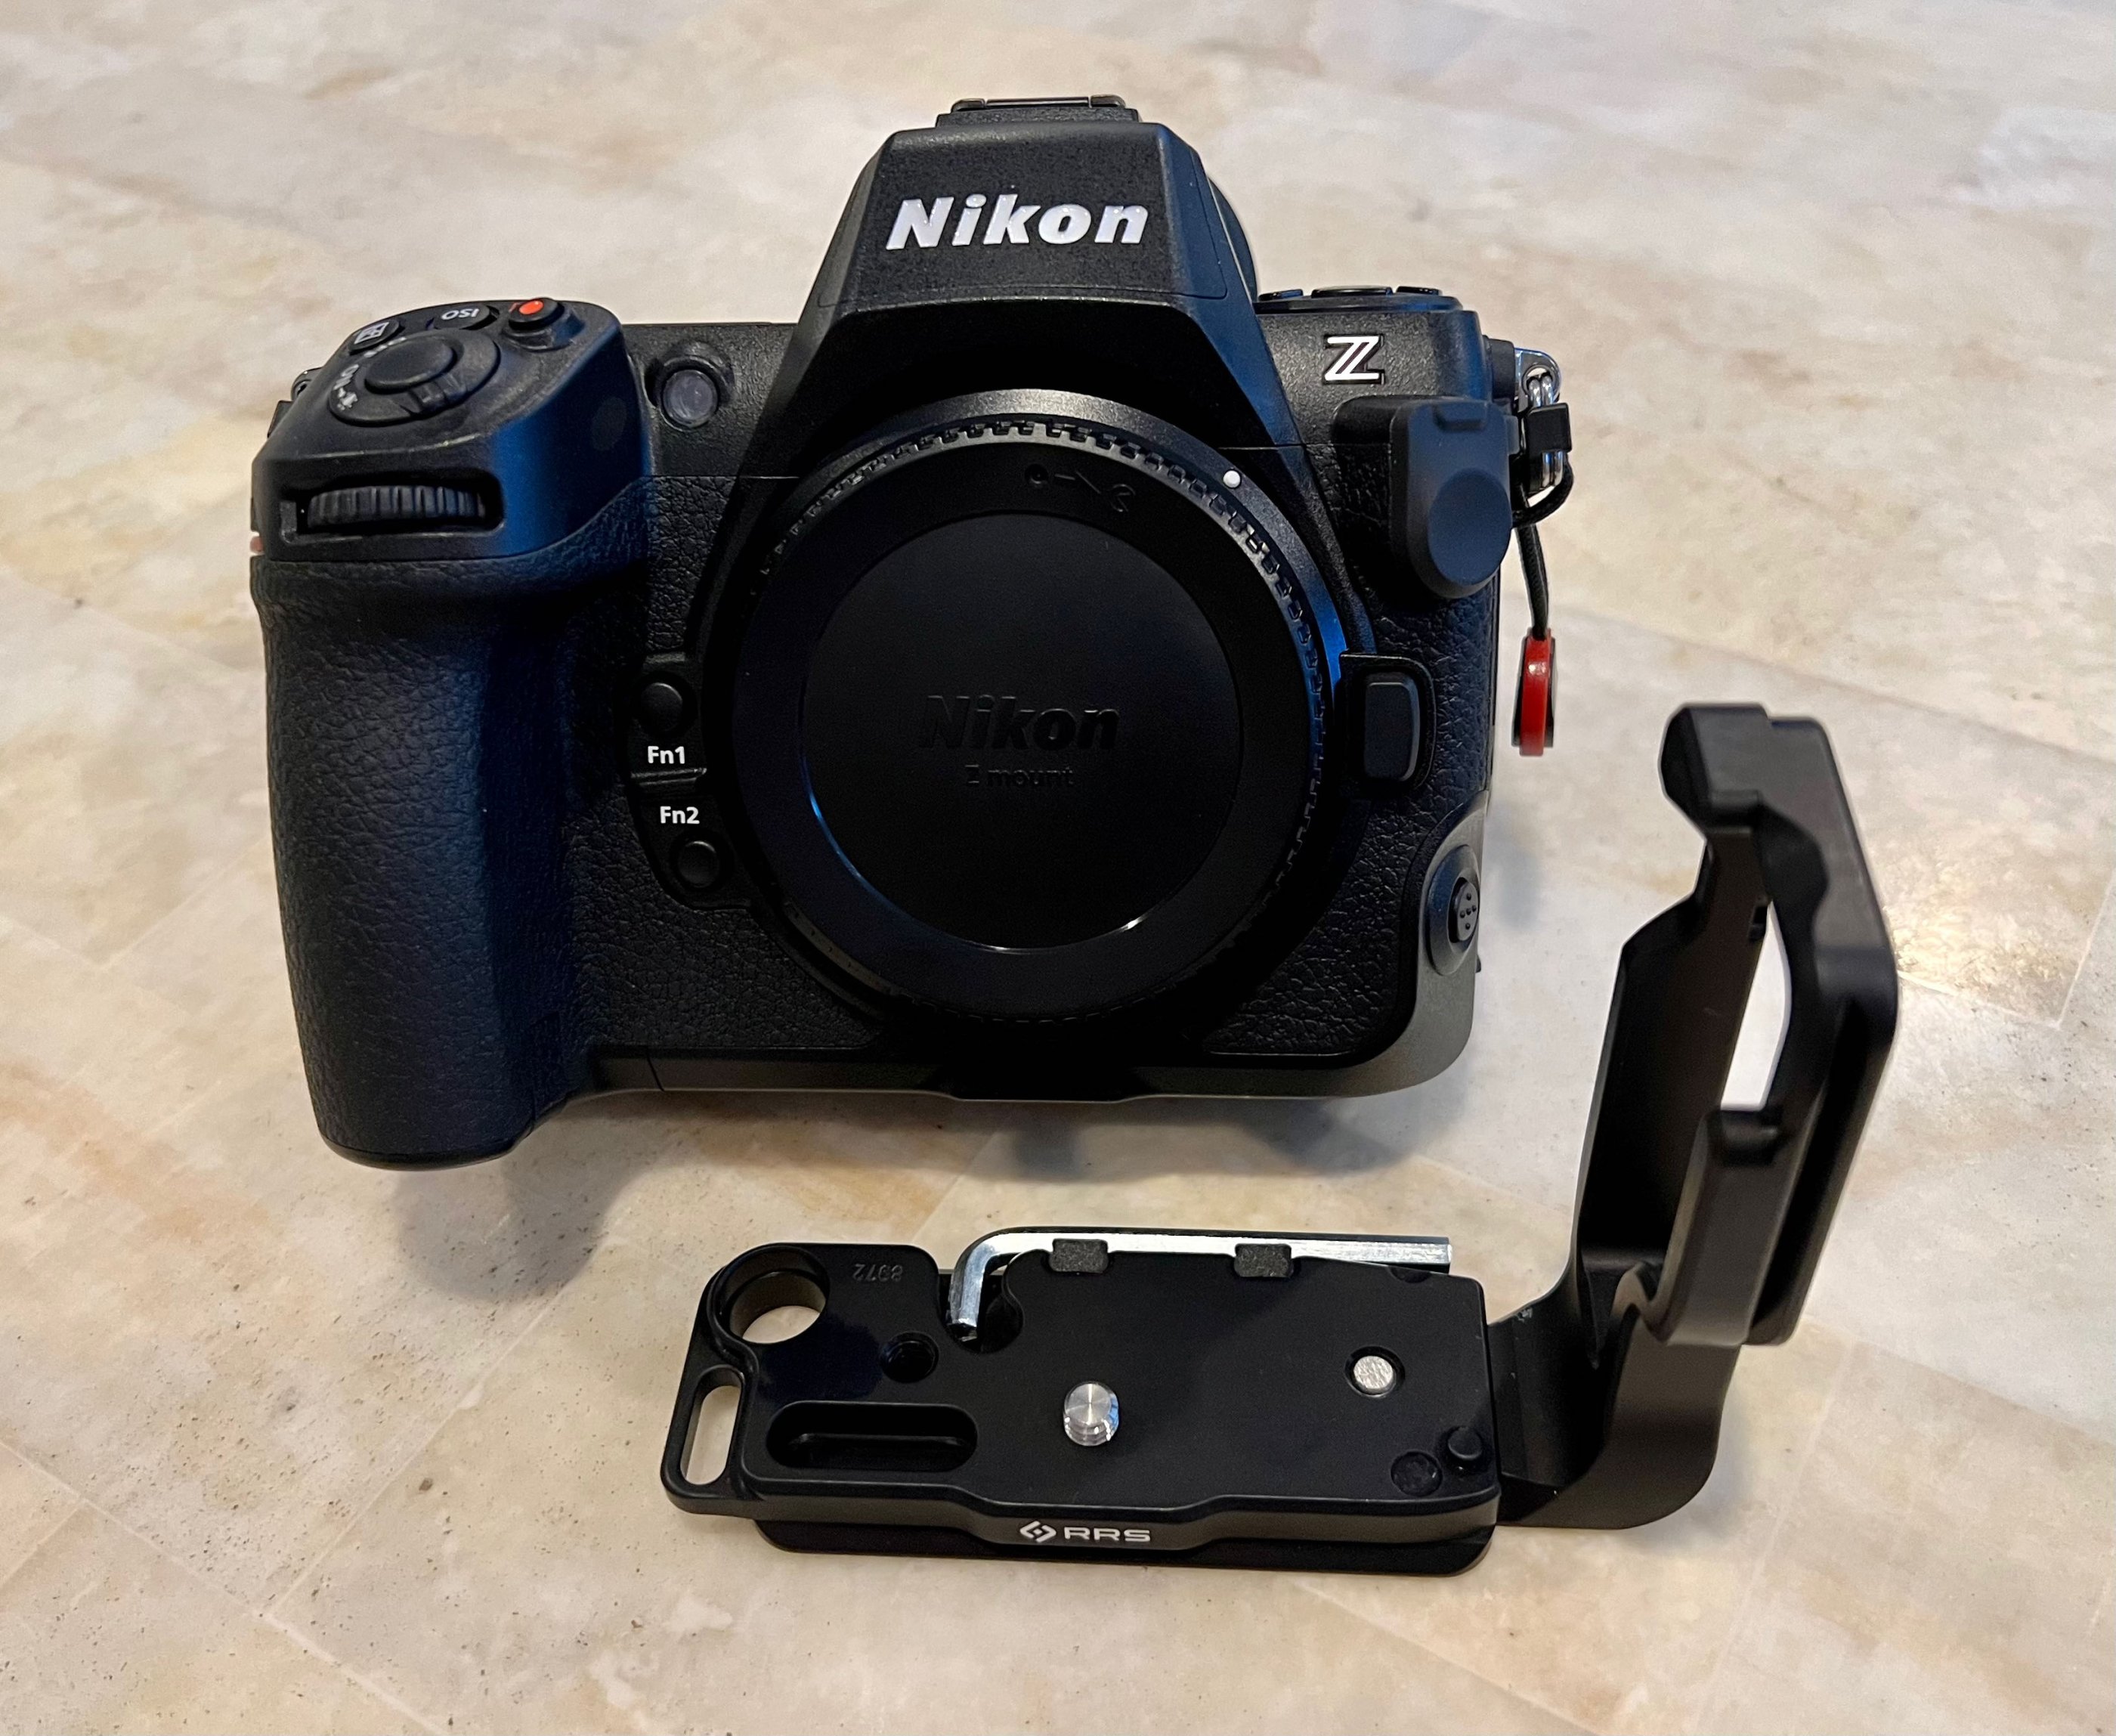 Leofoto LPN-Z9 L-Bracket for Nikon Z9 Mirrorless Camera